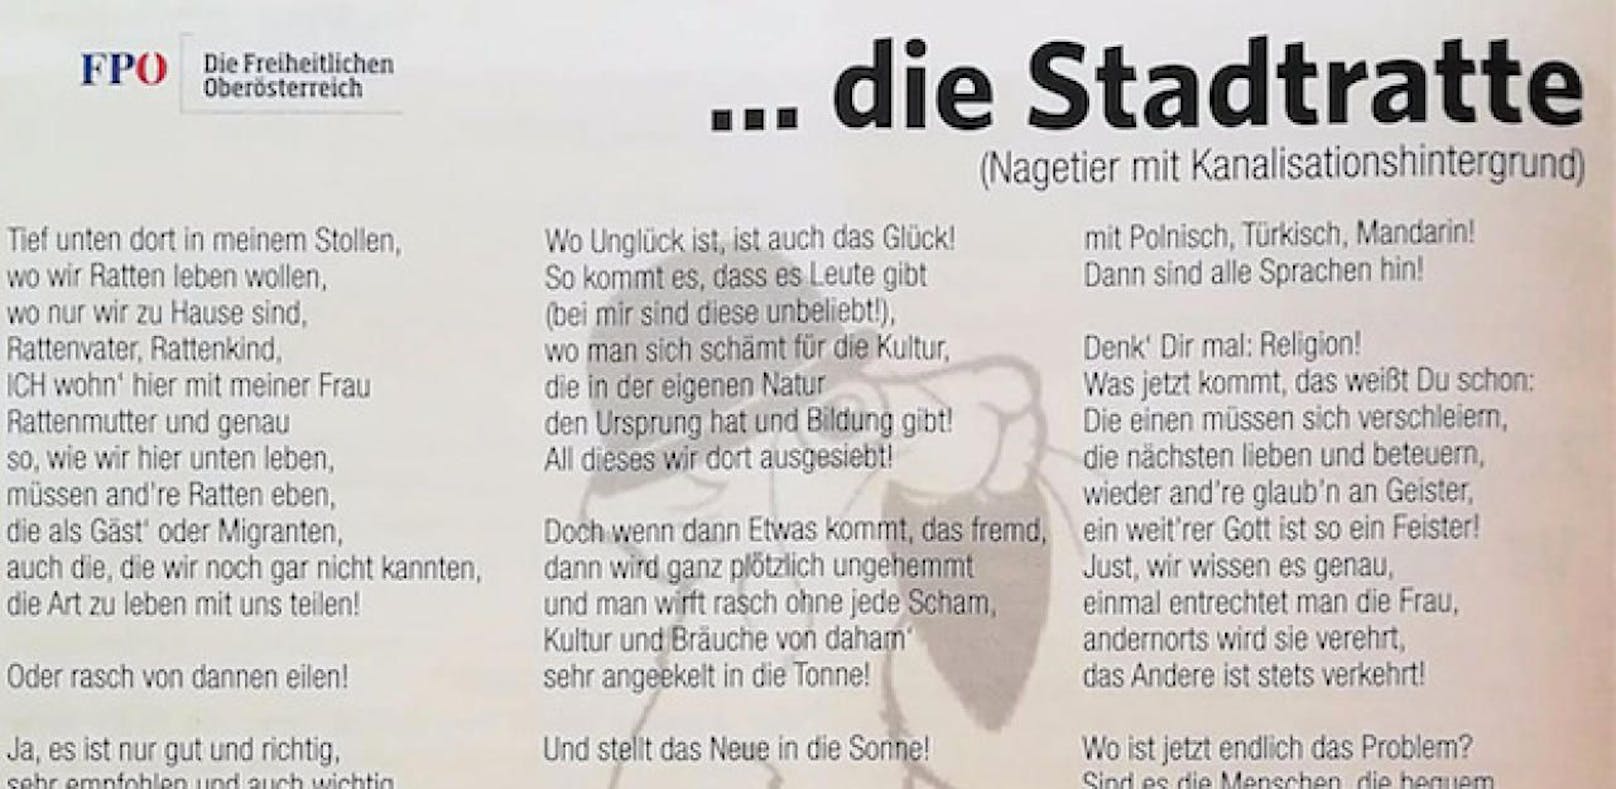 Das Gedicht der FPÖ Braunau sorgt für Kritik und Rücktrittsforderungen. 